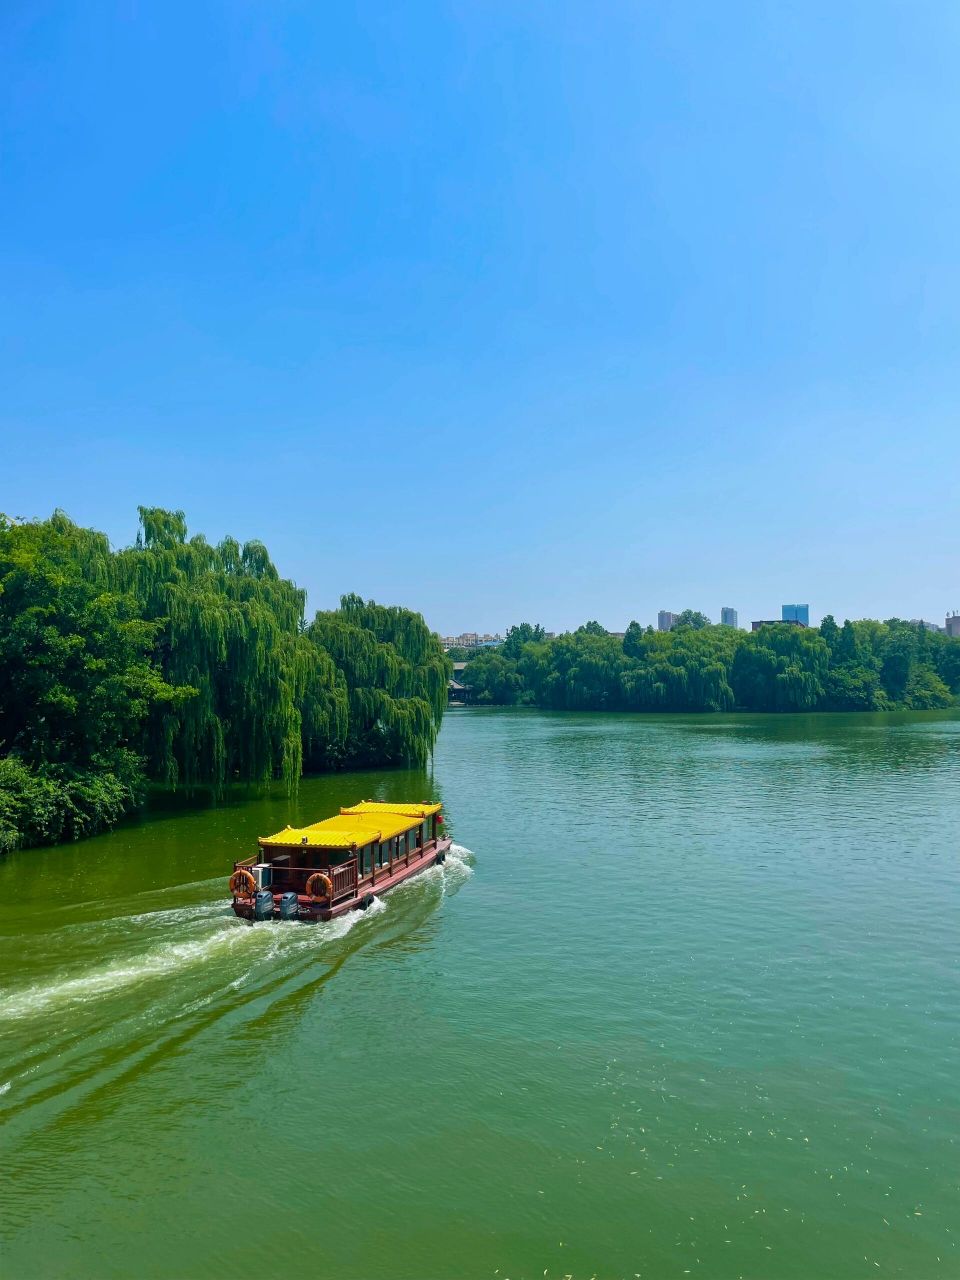 济南护城河游船路线图图片